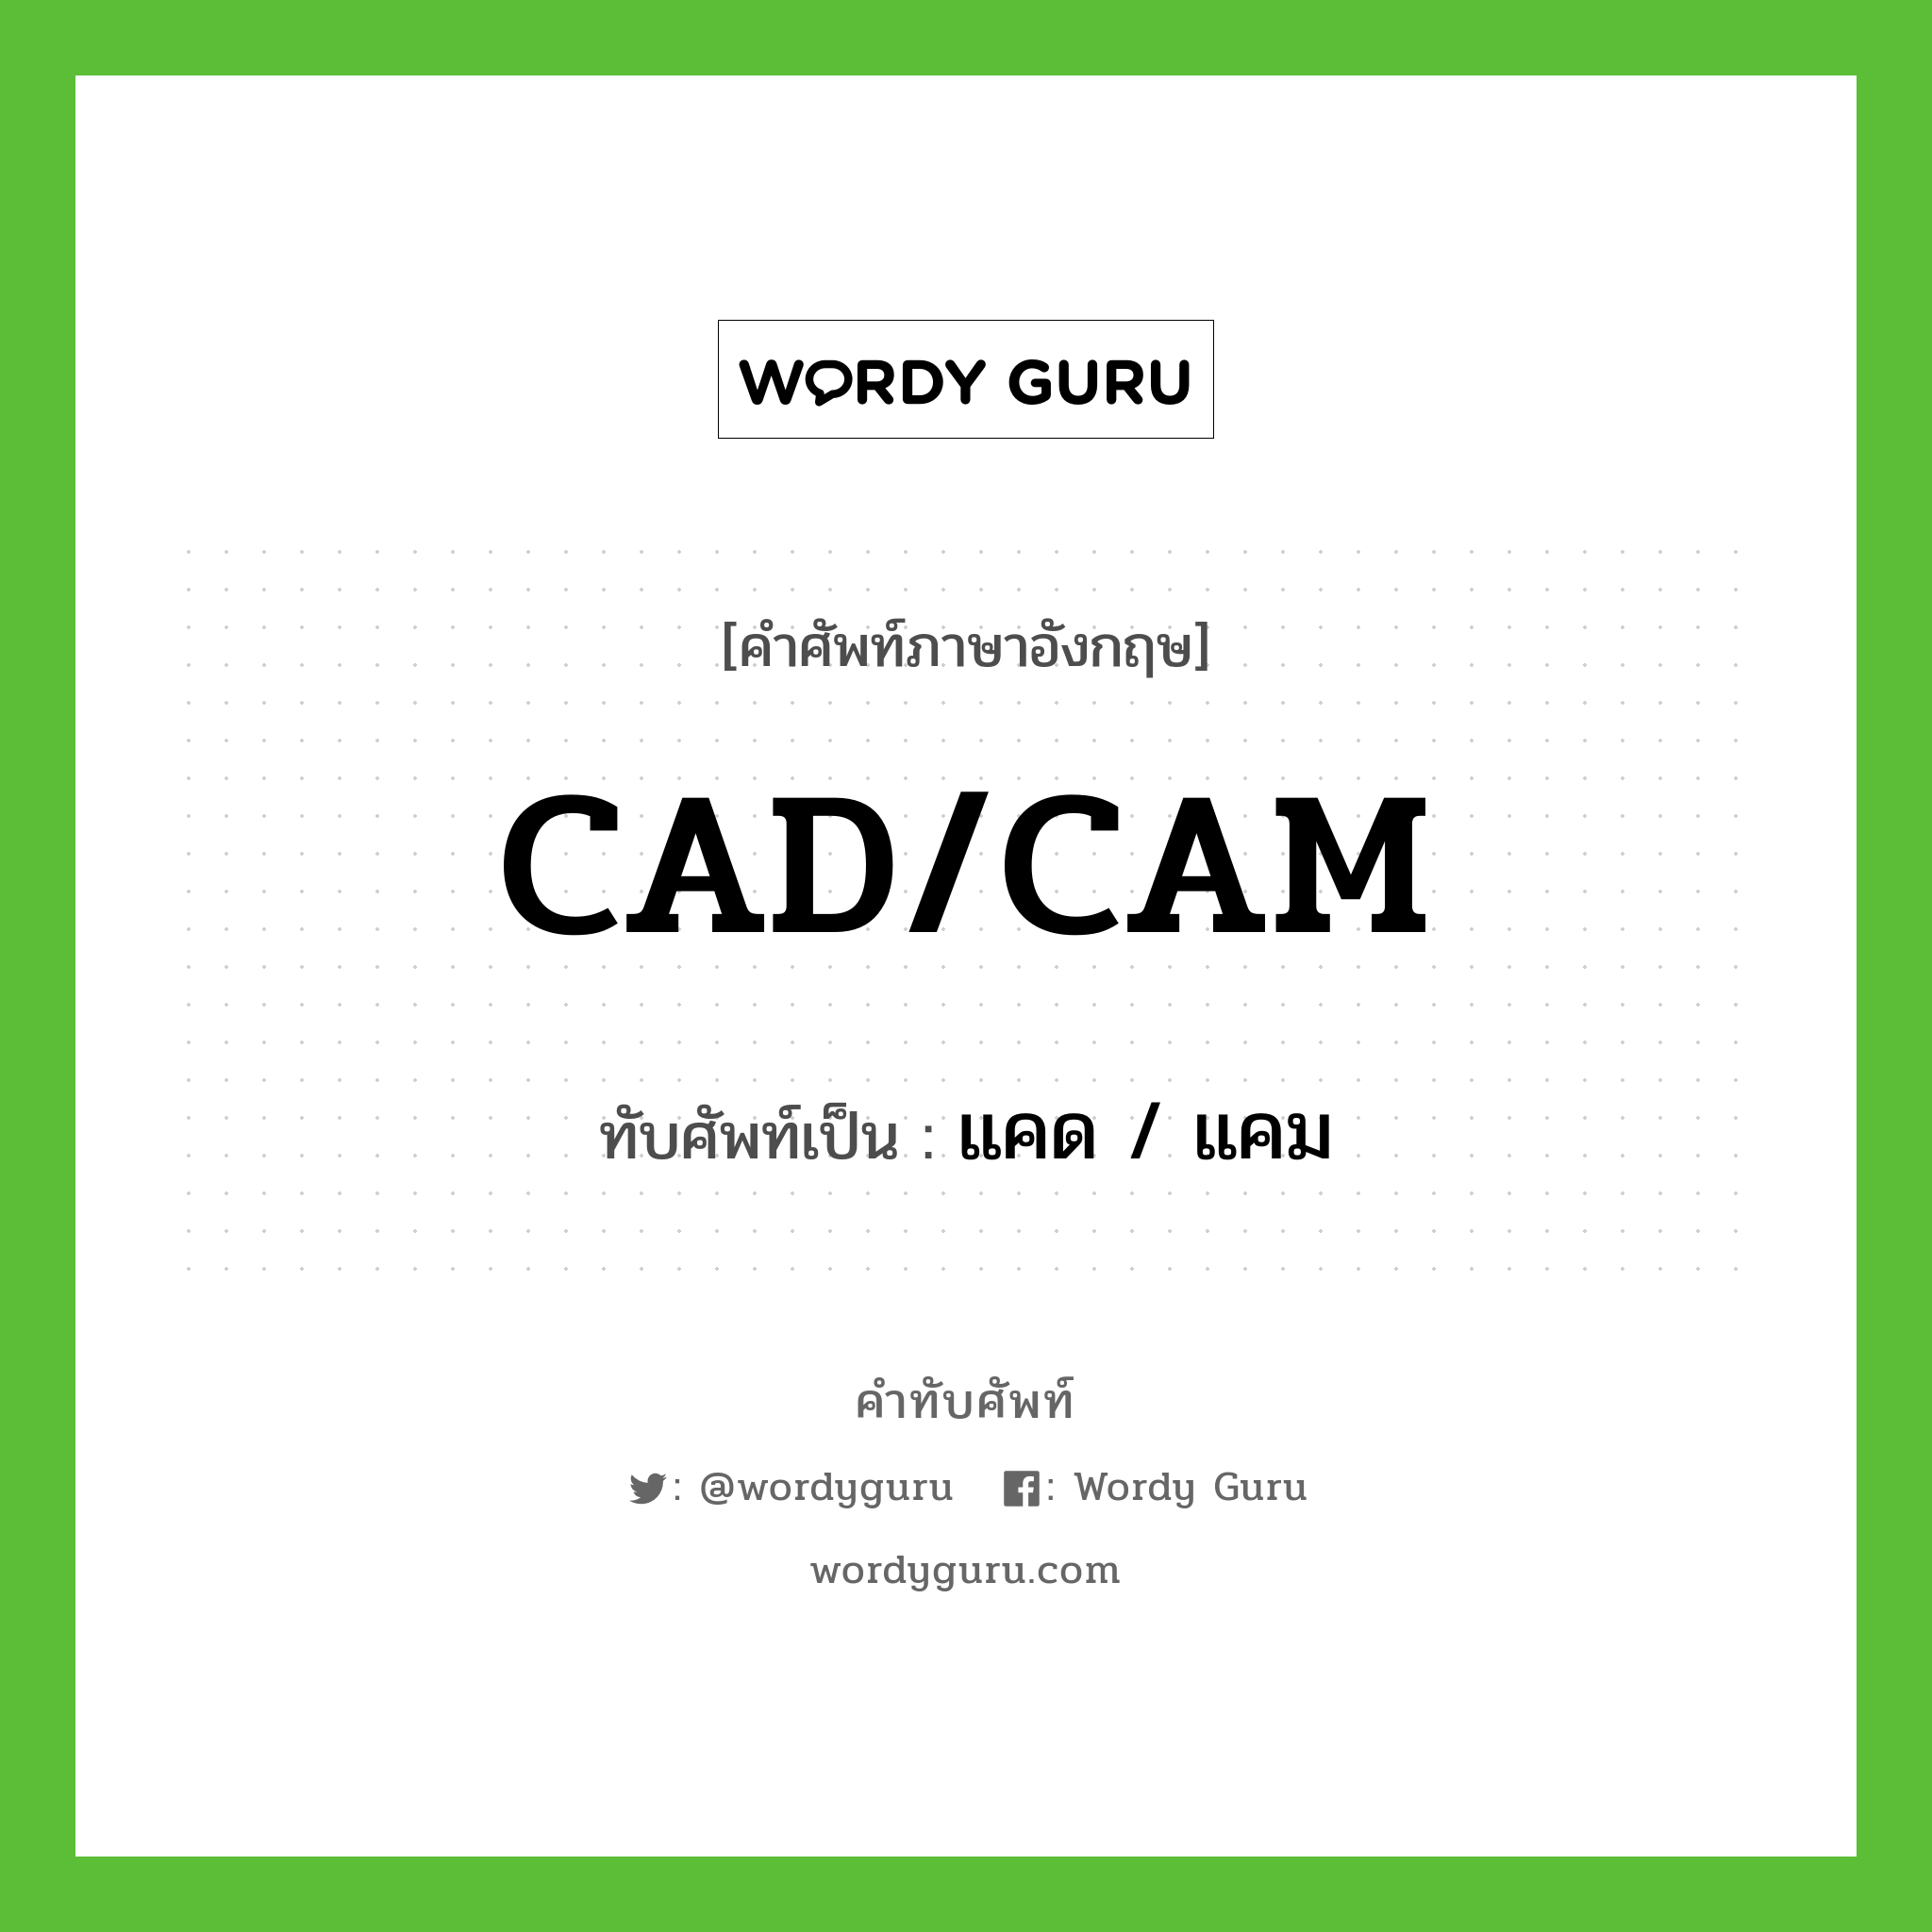 CAD/CAM เขียนเป็นคำไทยว่าอะไร?, คำศัพท์ภาษาอังกฤษ CAD/CAM ทับศัพท์เป็น แคด / แคม